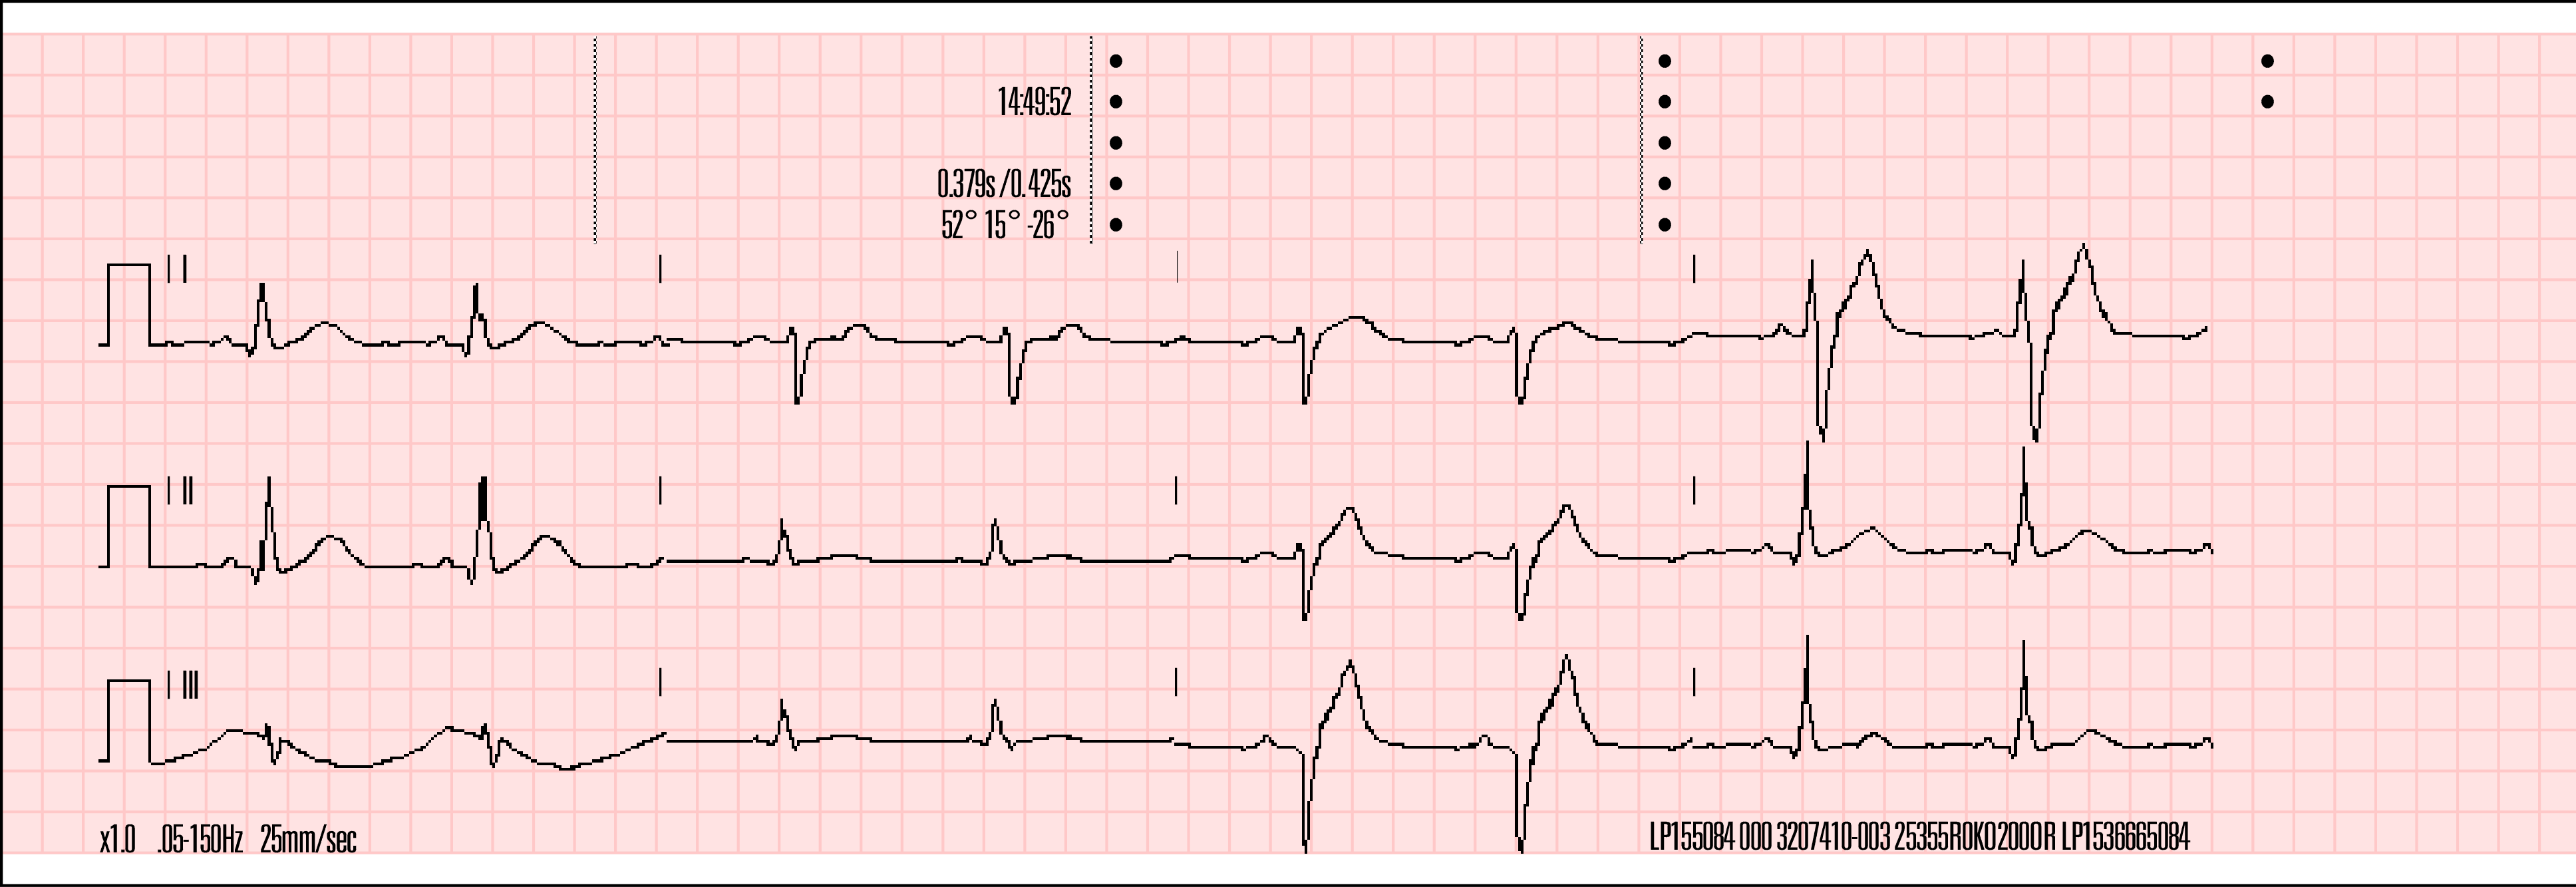 3kanálový formát 3kanálový formát tiskne 2,5 sekundy dat pro každý svod. Obrázek 4-7 znázorňuje příklad zprávy o 12svodovém EKG vytisknuté ve 3kanálovém formátu za použití standardního stylu.